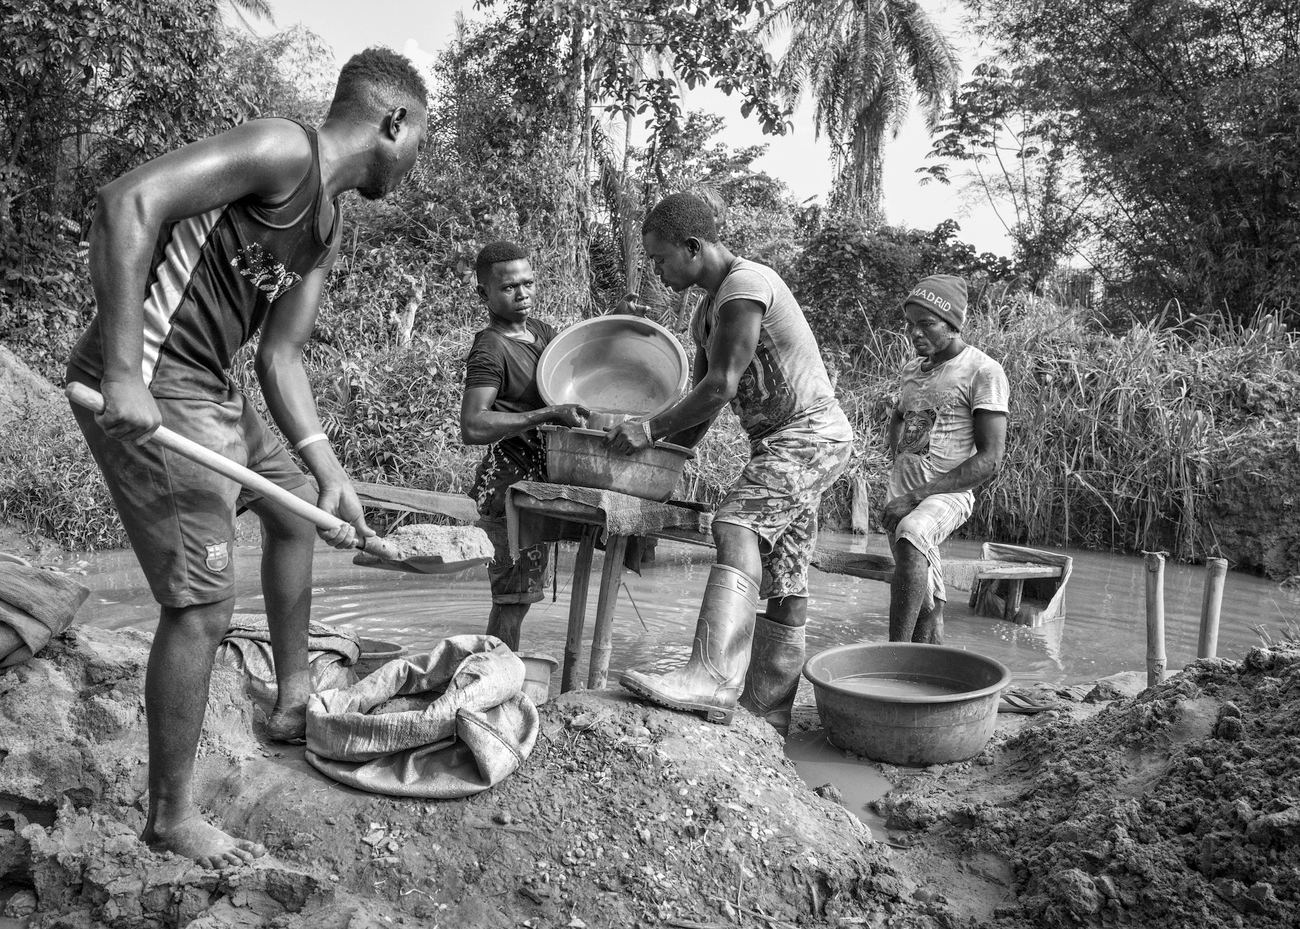 Congo washing gold